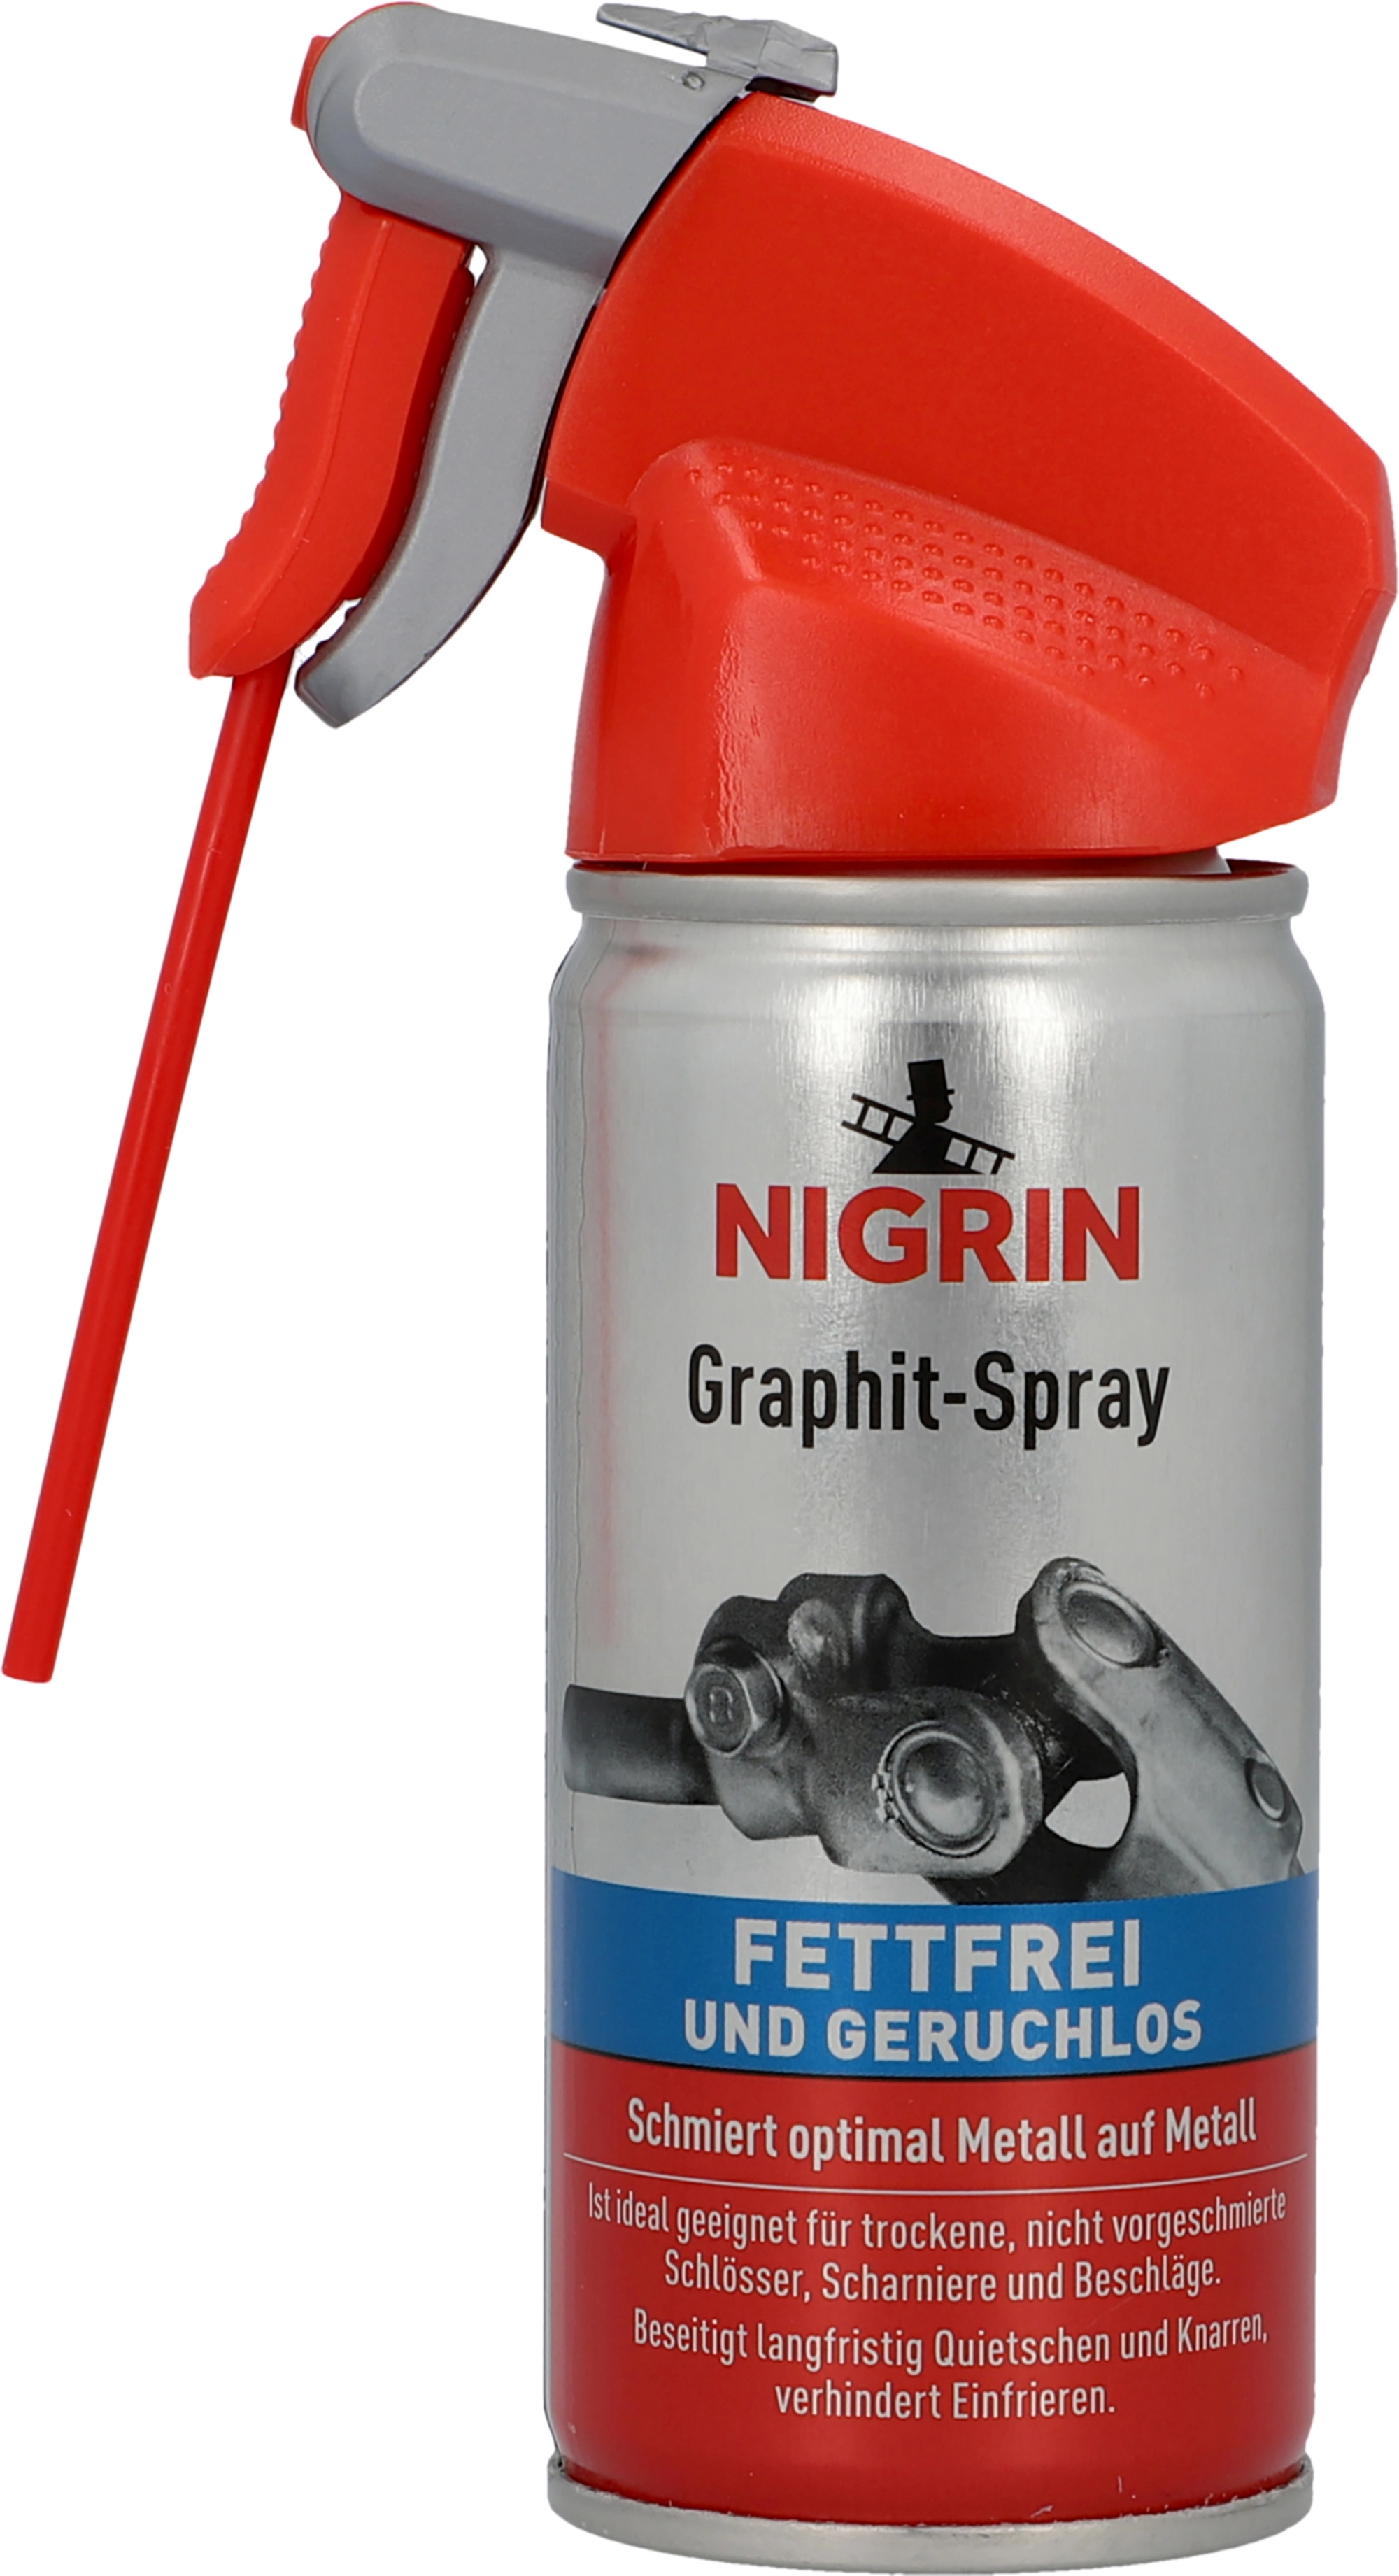 Nigrin Graphit-Spray 100 ml kaufen bei OBI